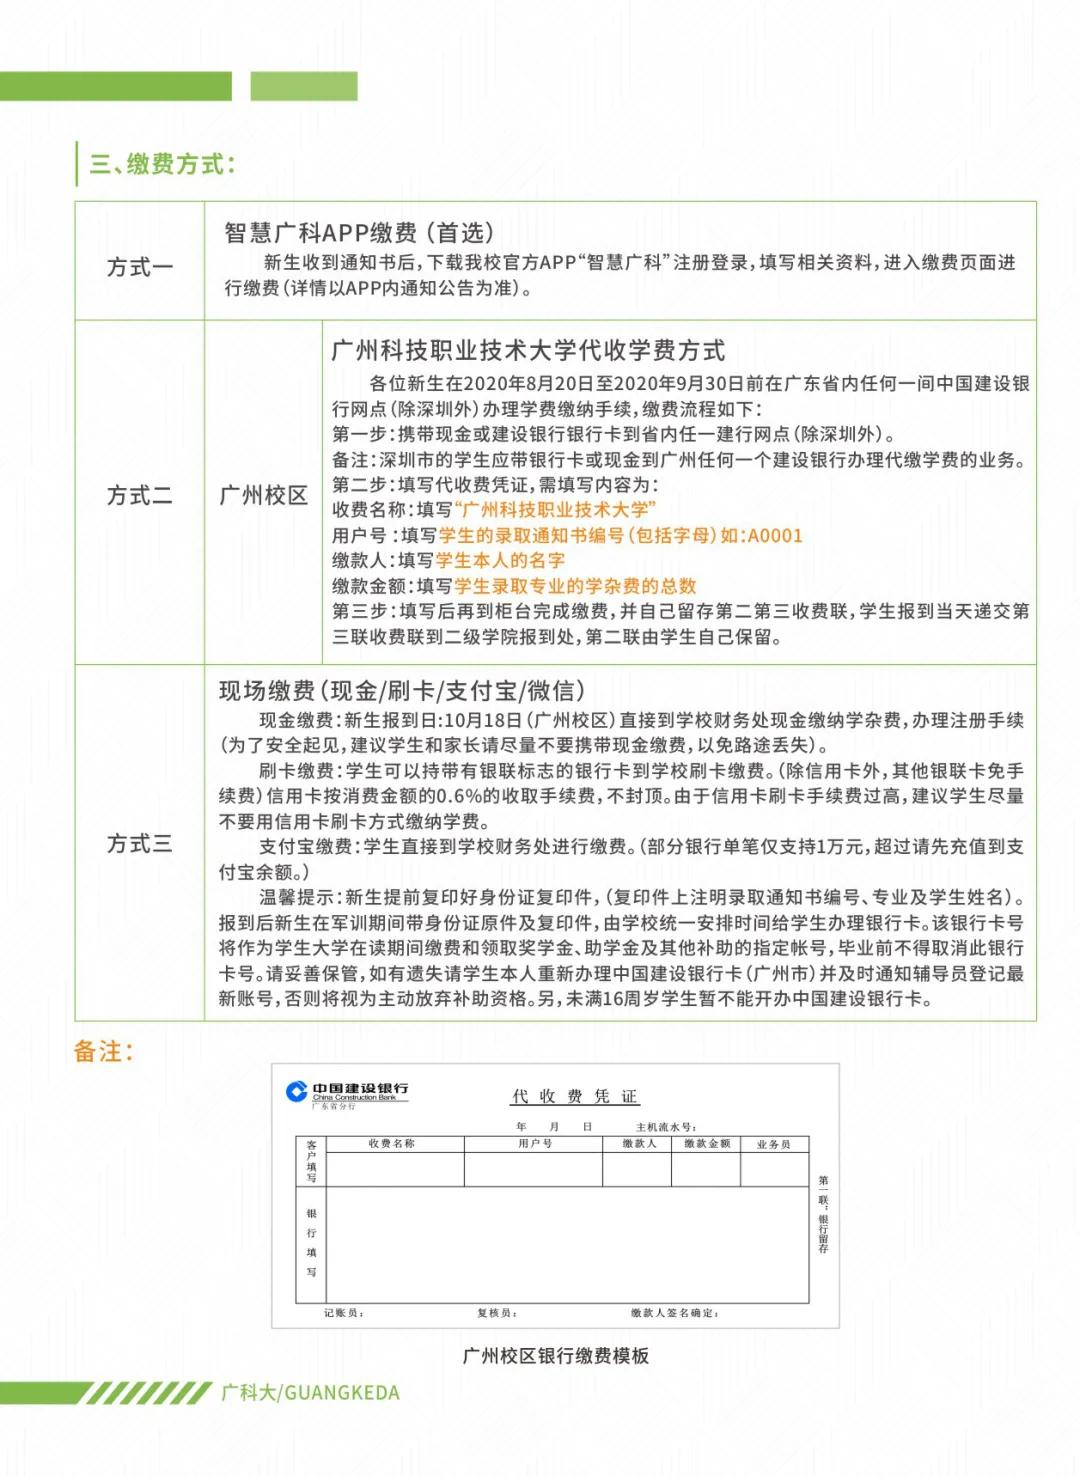 专插本学校——广州科技职业技术大学(图6)